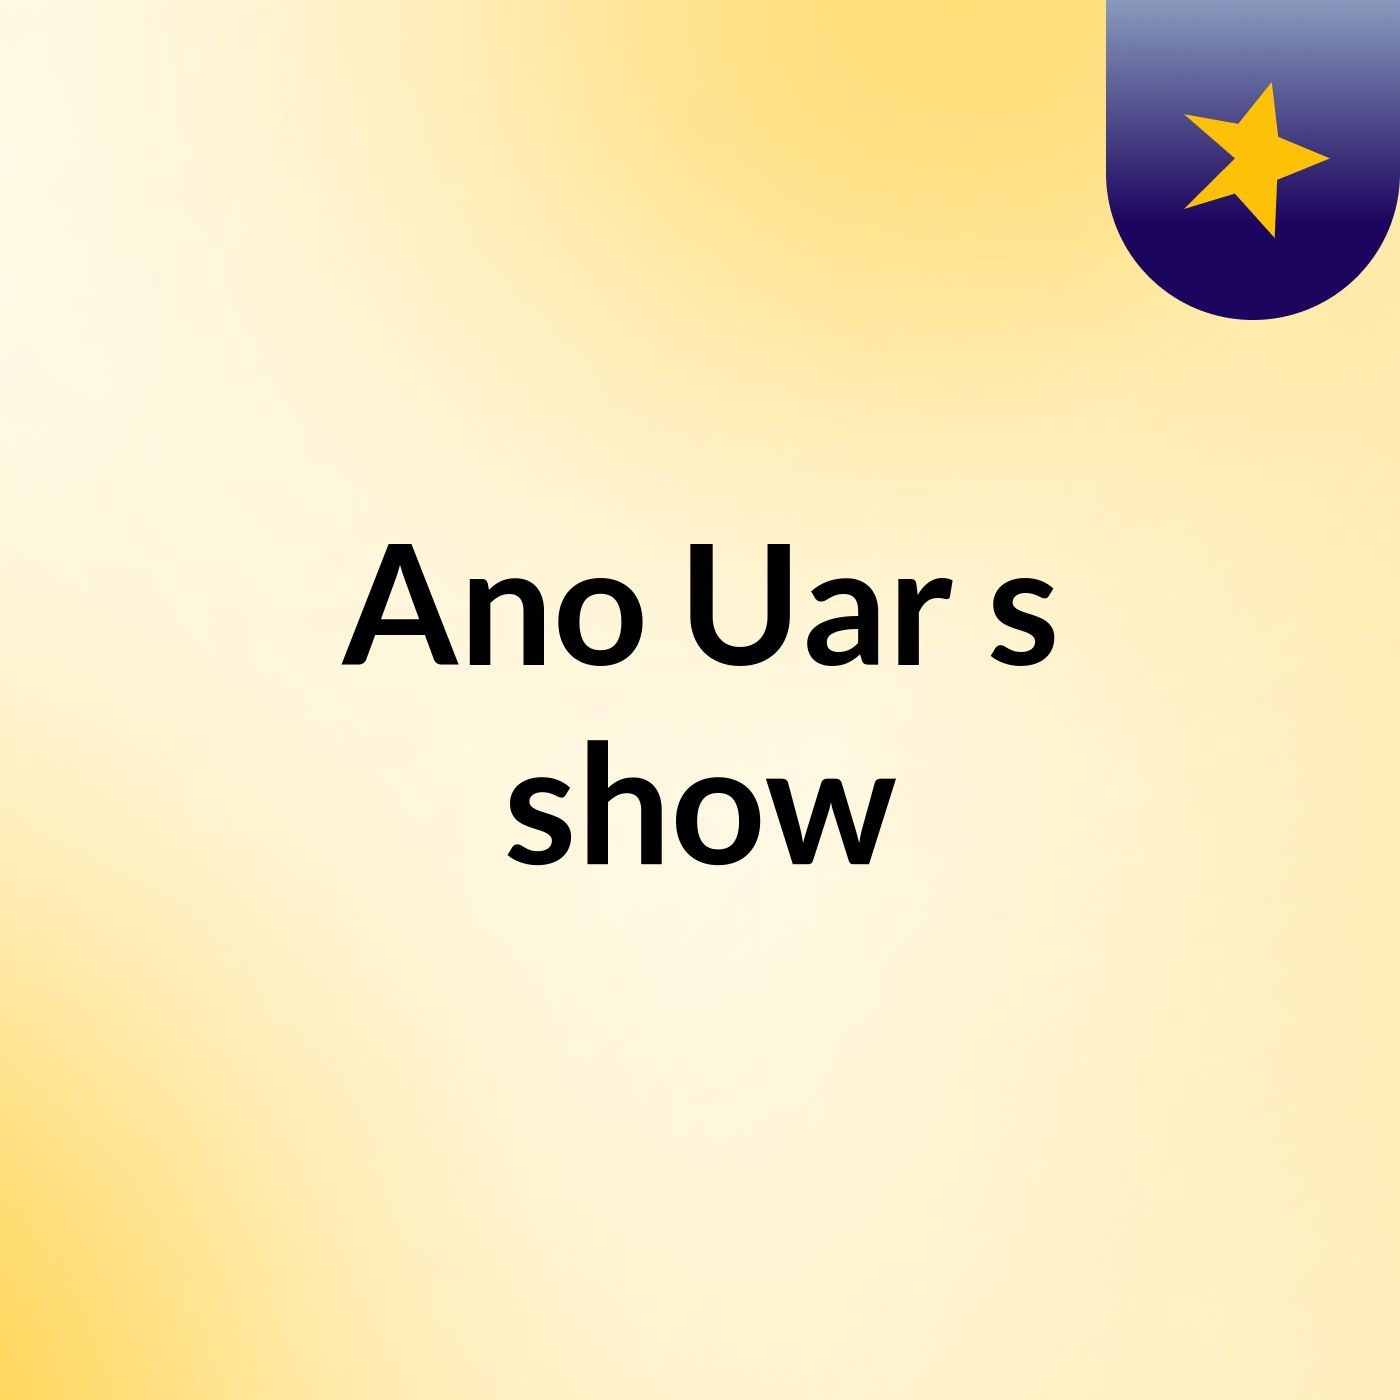 Ano Uar's show